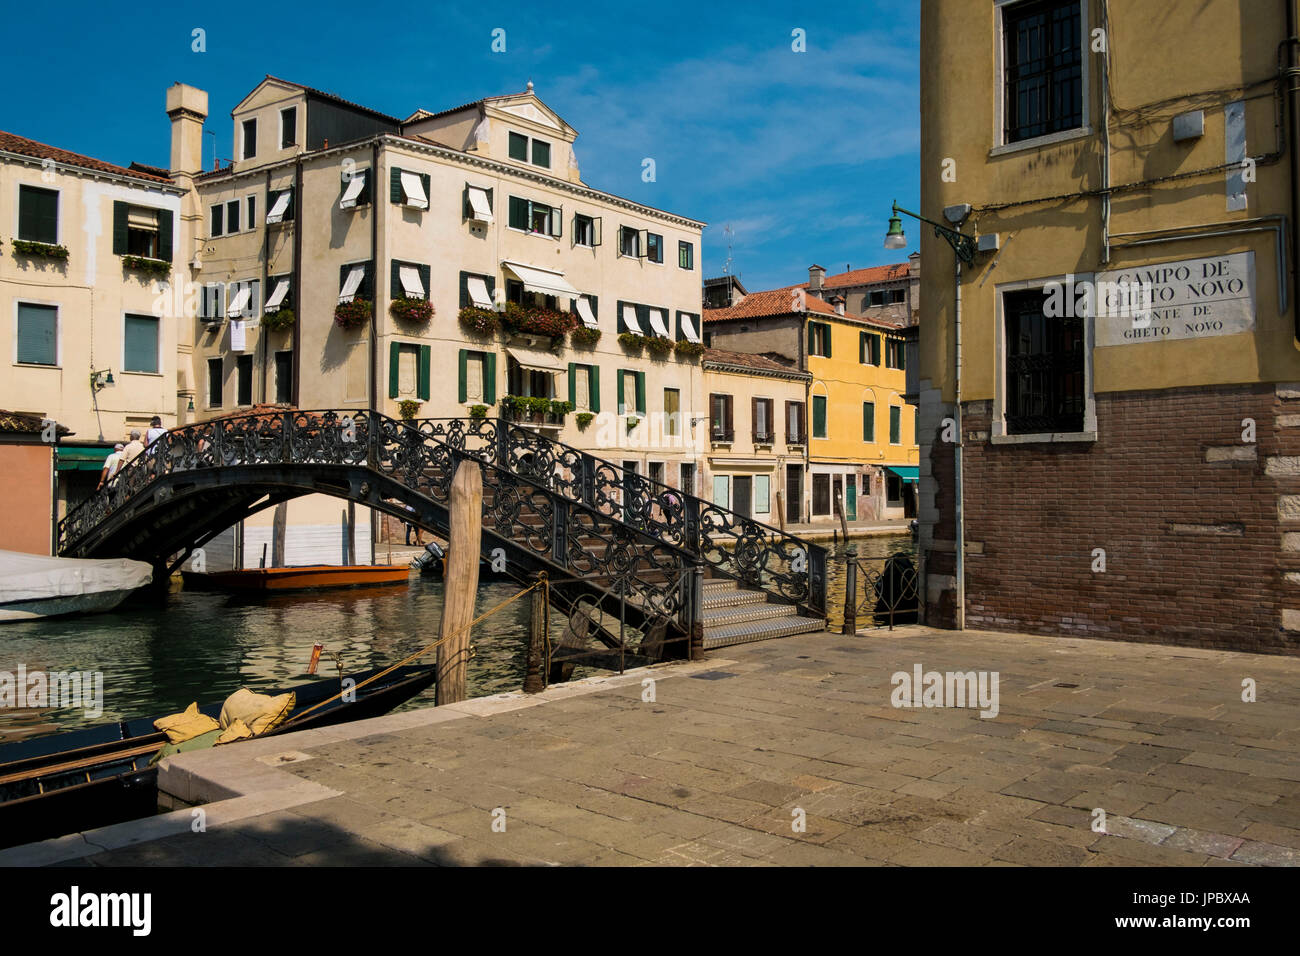 Ponte de Gheto Novo, Canaregio, Venedig, Veneto, Nord-Ost Italien, Europa. Stockfoto